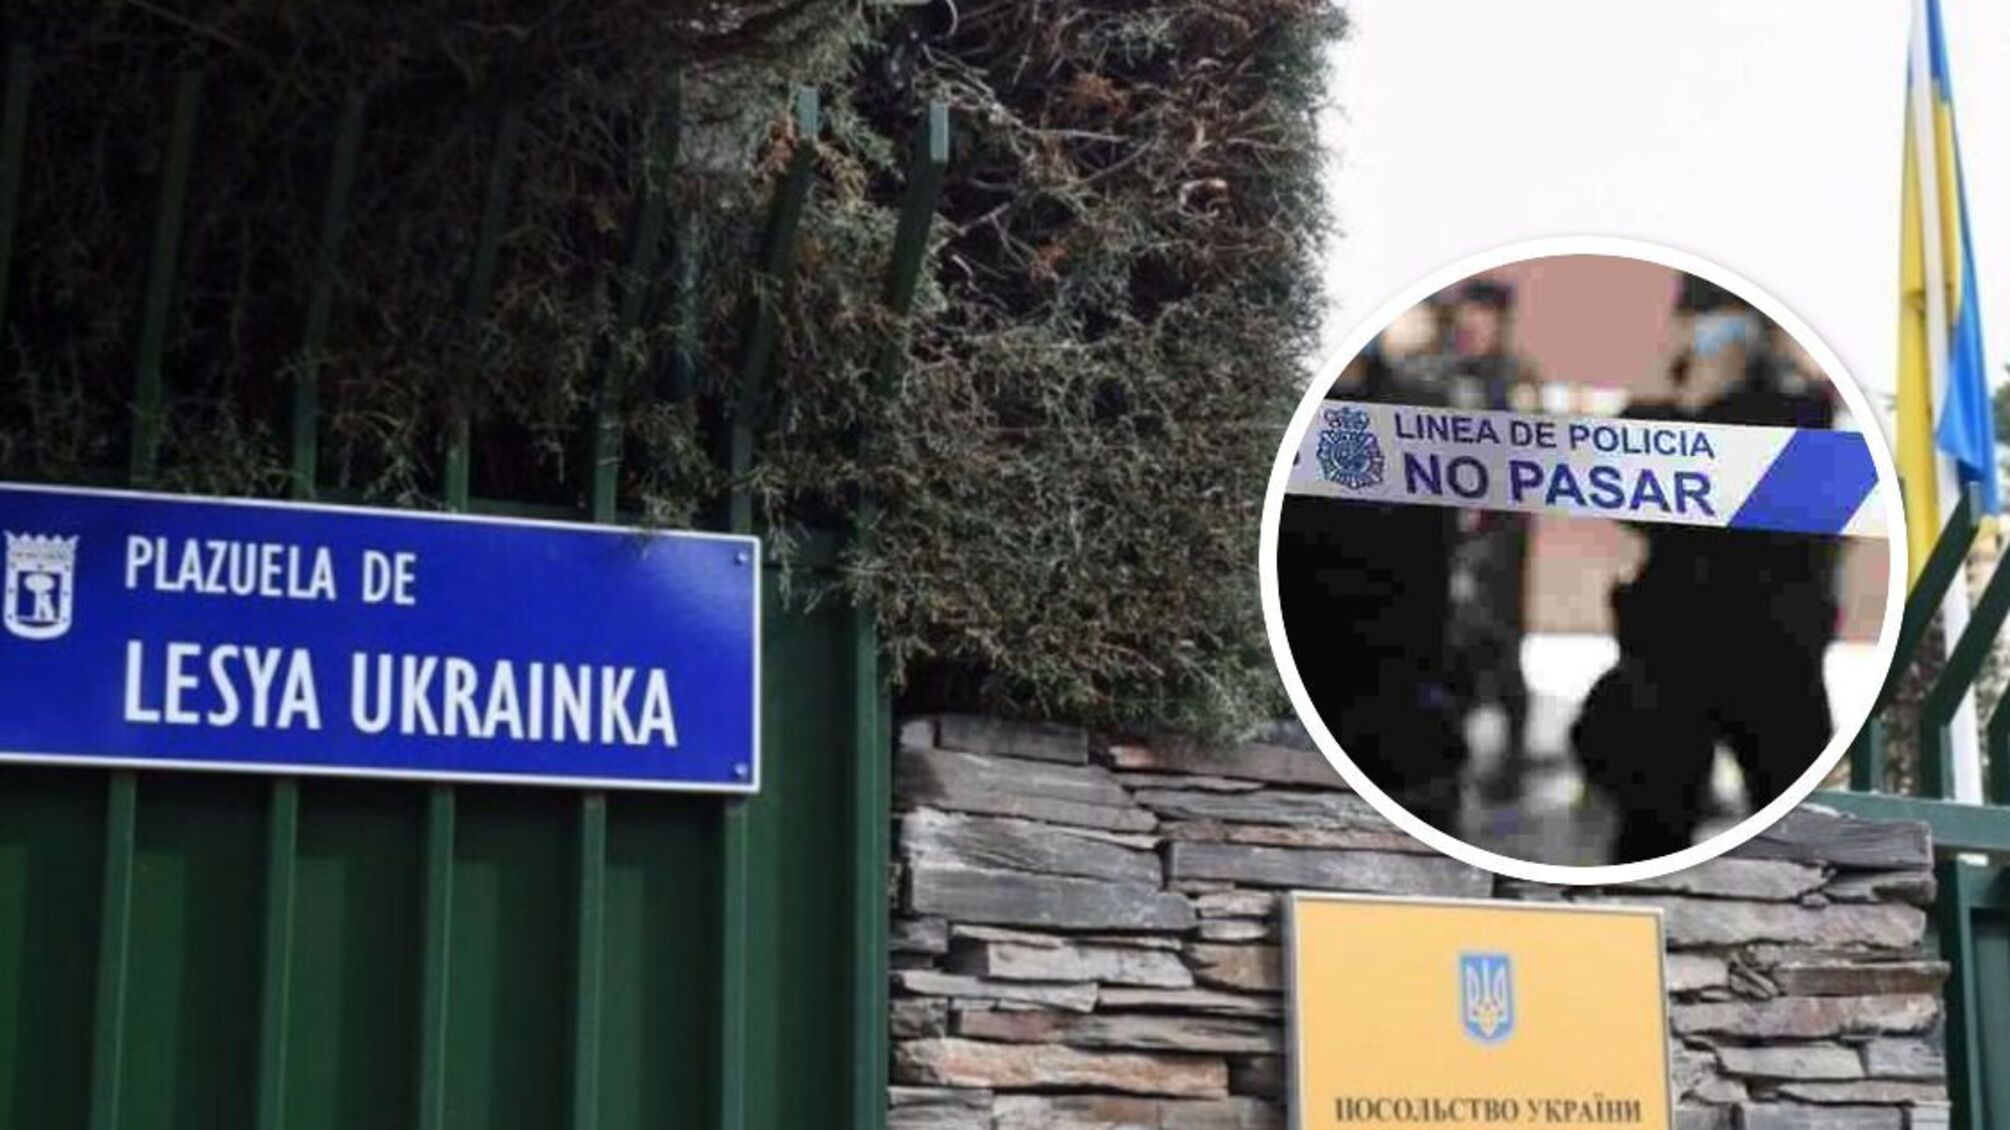 У Мадриді стався вибух у посольстві України: деталі